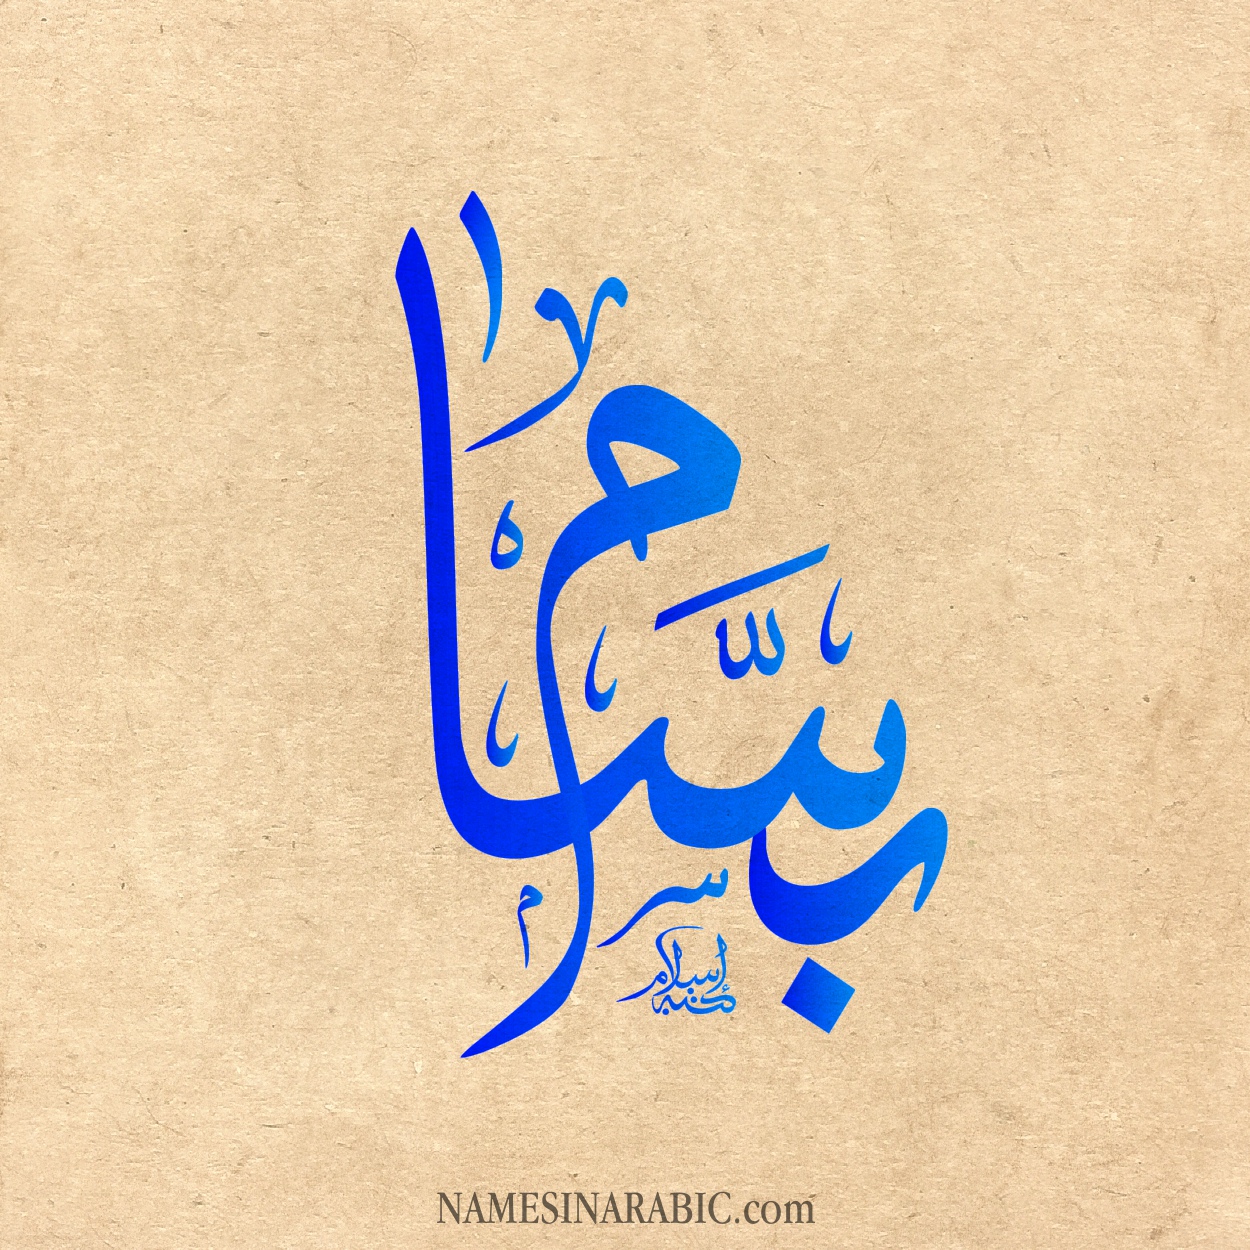 صورة اسم بَسّام BASAM اسم بَسّام بالخط العربي من موقع الأسماء بالخط العربي بريشة الفنان إسلام ابن الفضل